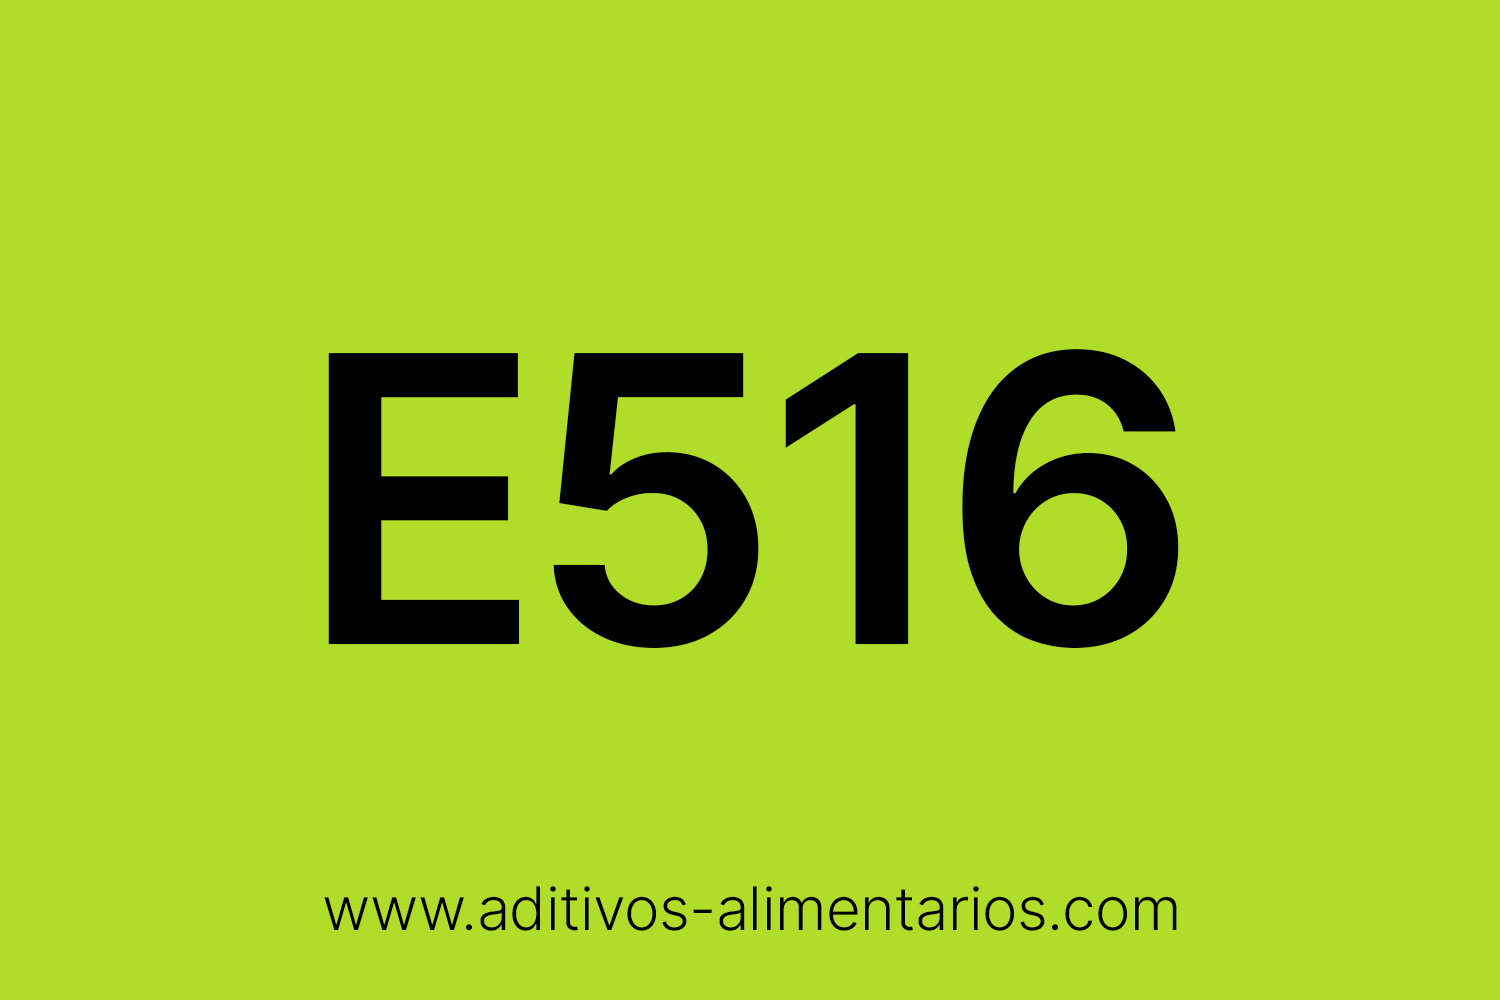 Aditivo Alimentario - E516 - Sulfatos Cálcicos